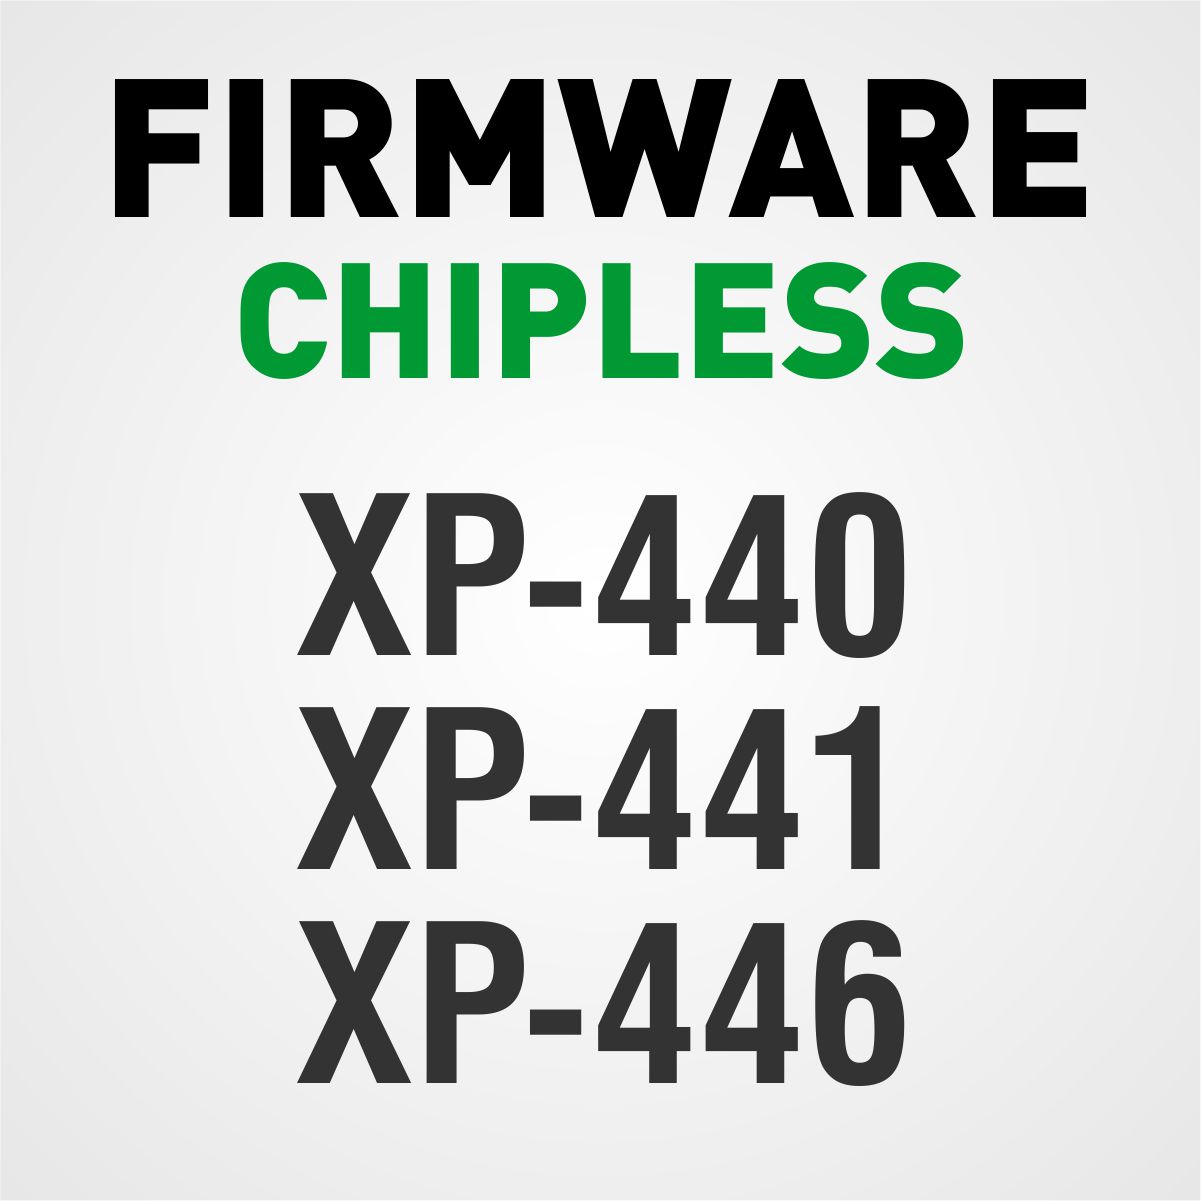 Epson XP-440, XP-441 e XP-446 | Arquivo de Software Firmware ChipLess